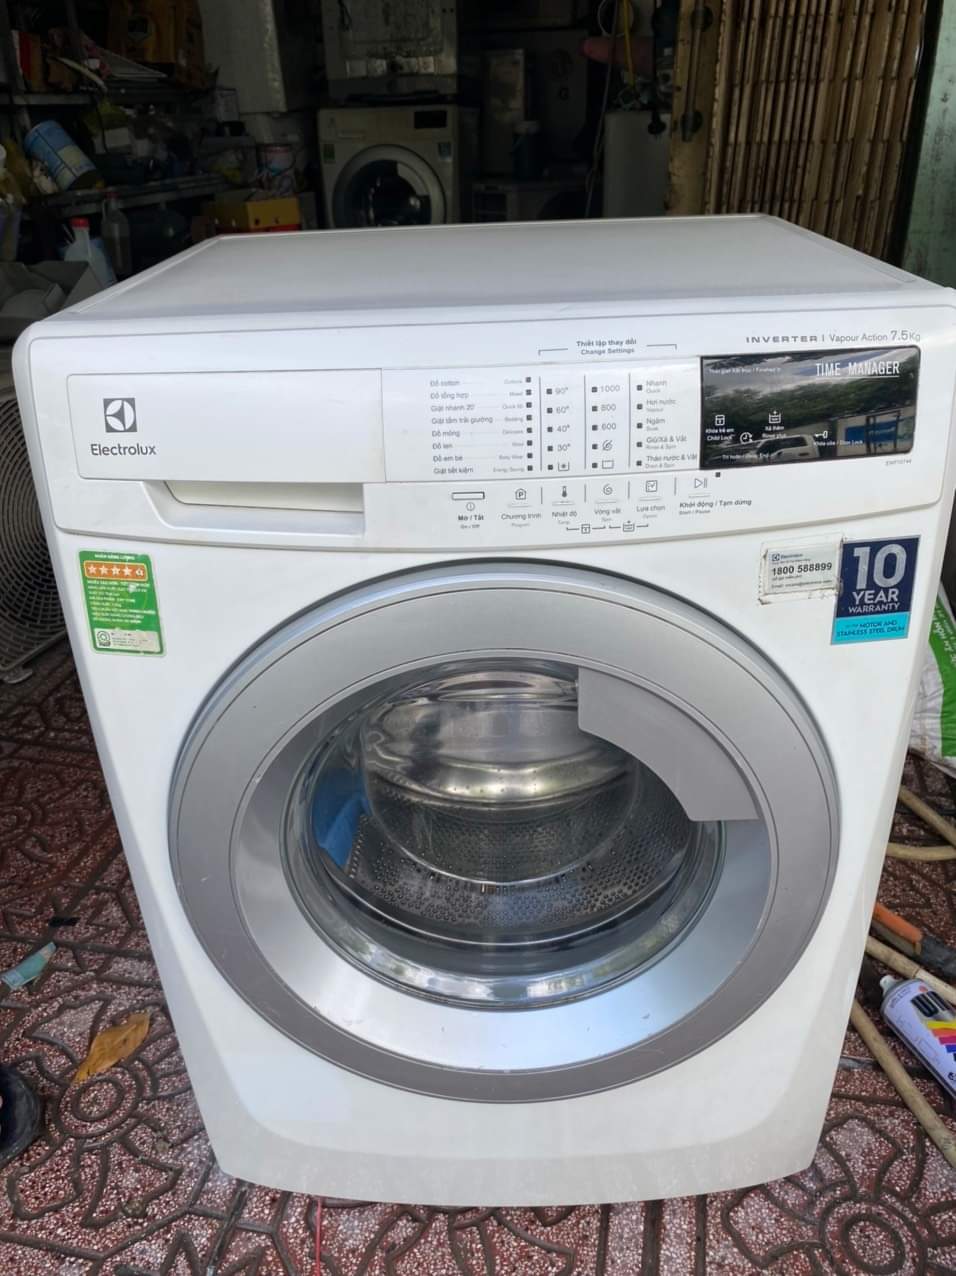 Máy giặt Electrolux 7kg cửa ngang cũ thanh lí | Mua bán đồ cũ tại Quảng Ninh